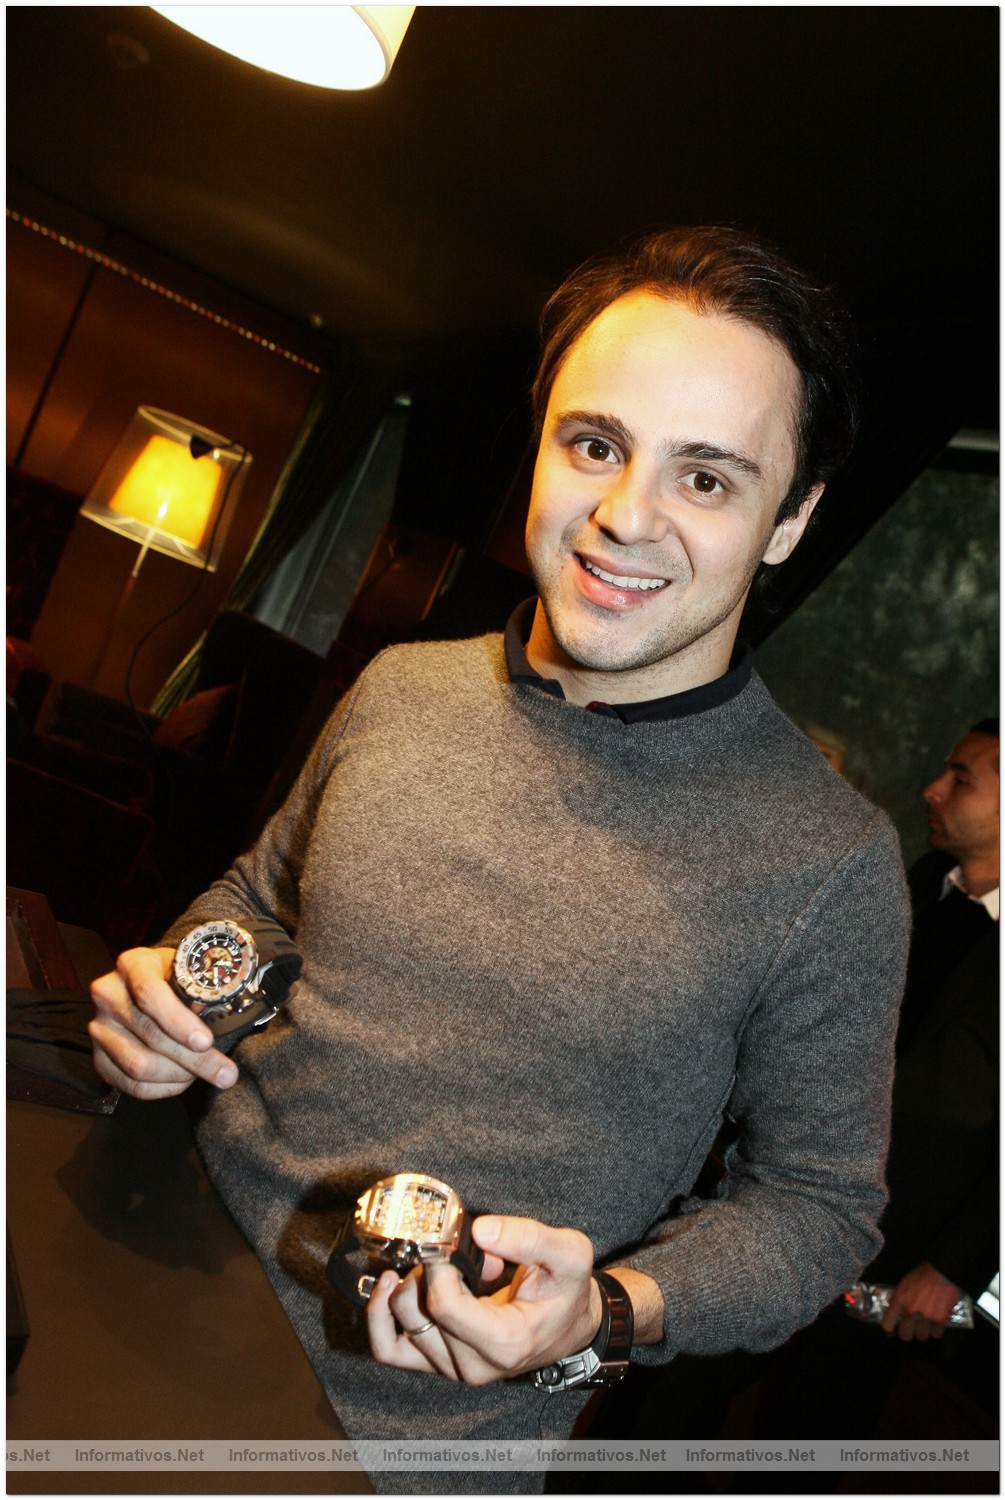 BCN0505010.- Presentación del RM011 FM (Felipe Massa) Ltd. Ed. Felipe Massa, piloto Ferrari F1